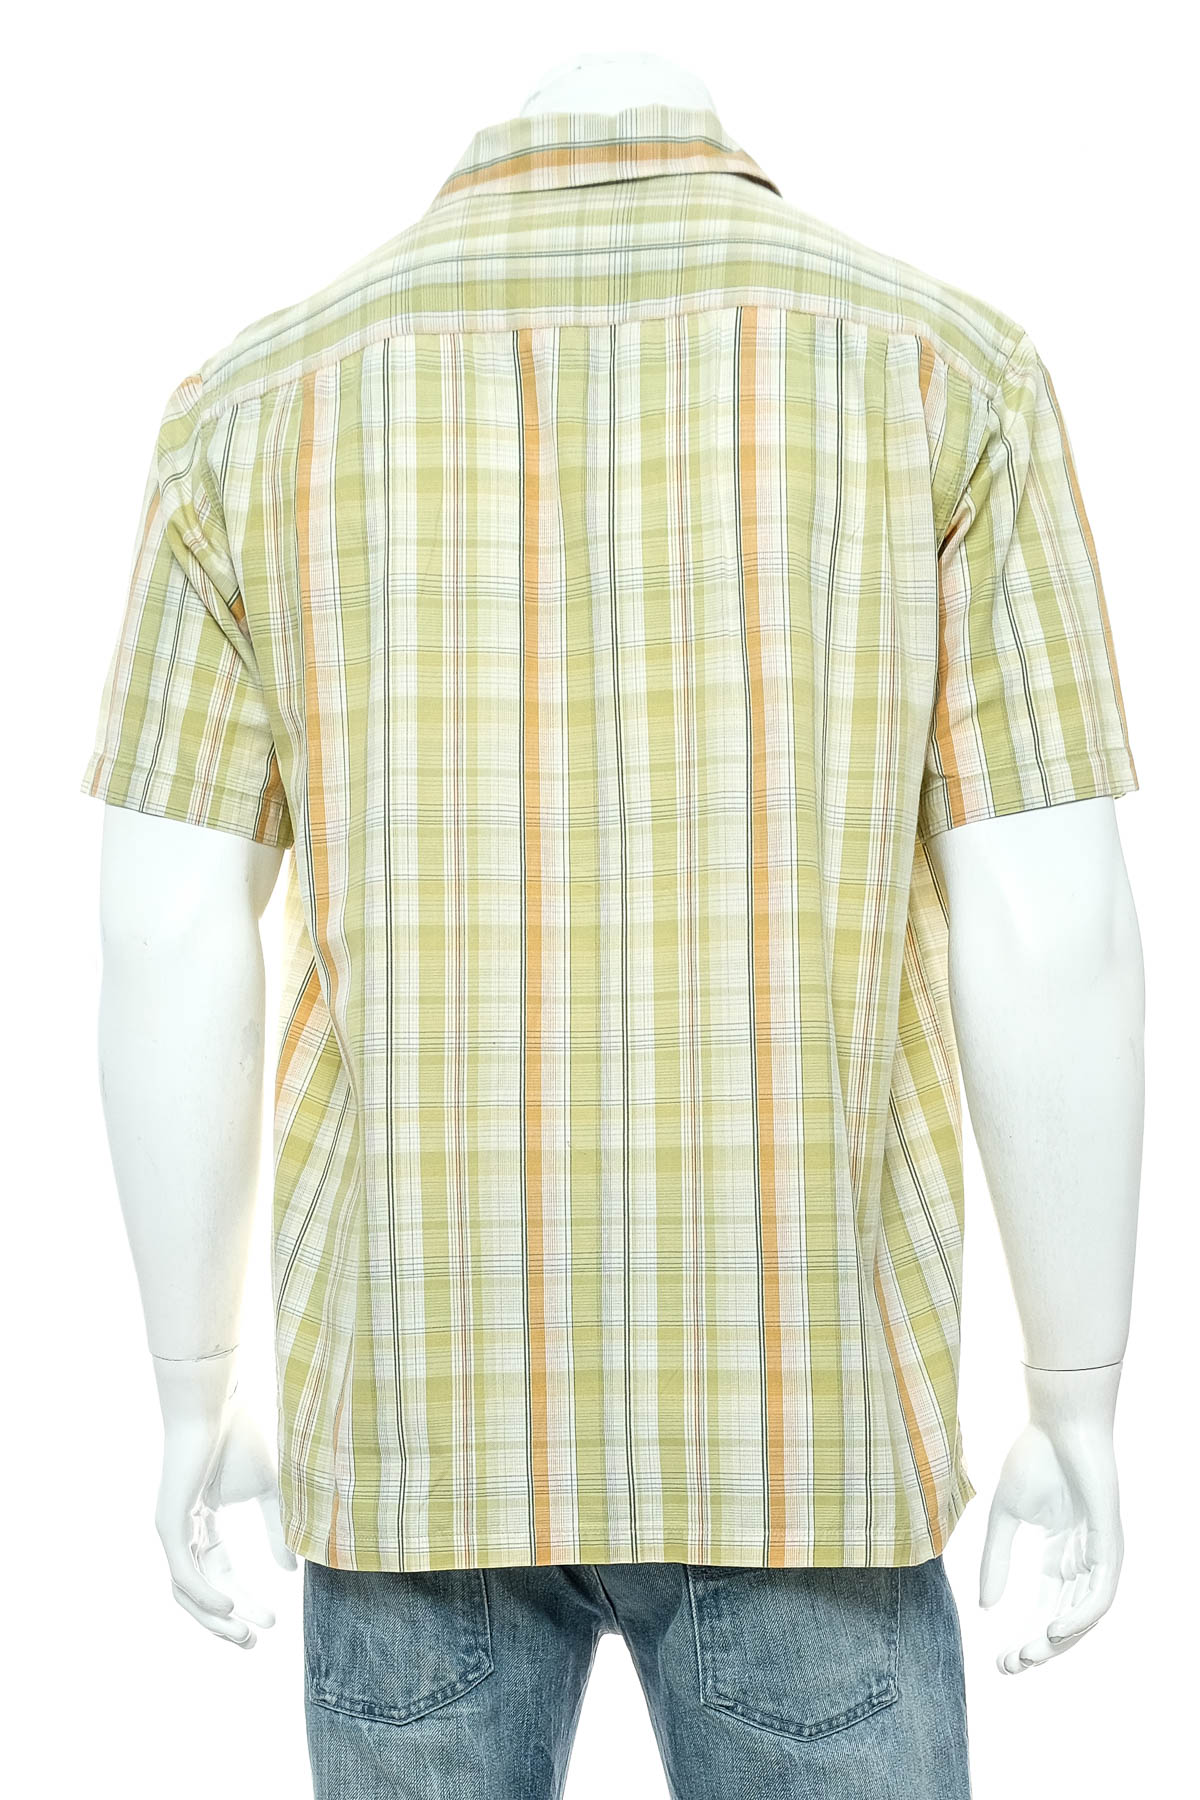 Ανδρικό πουκάμισο - Columbia - 1